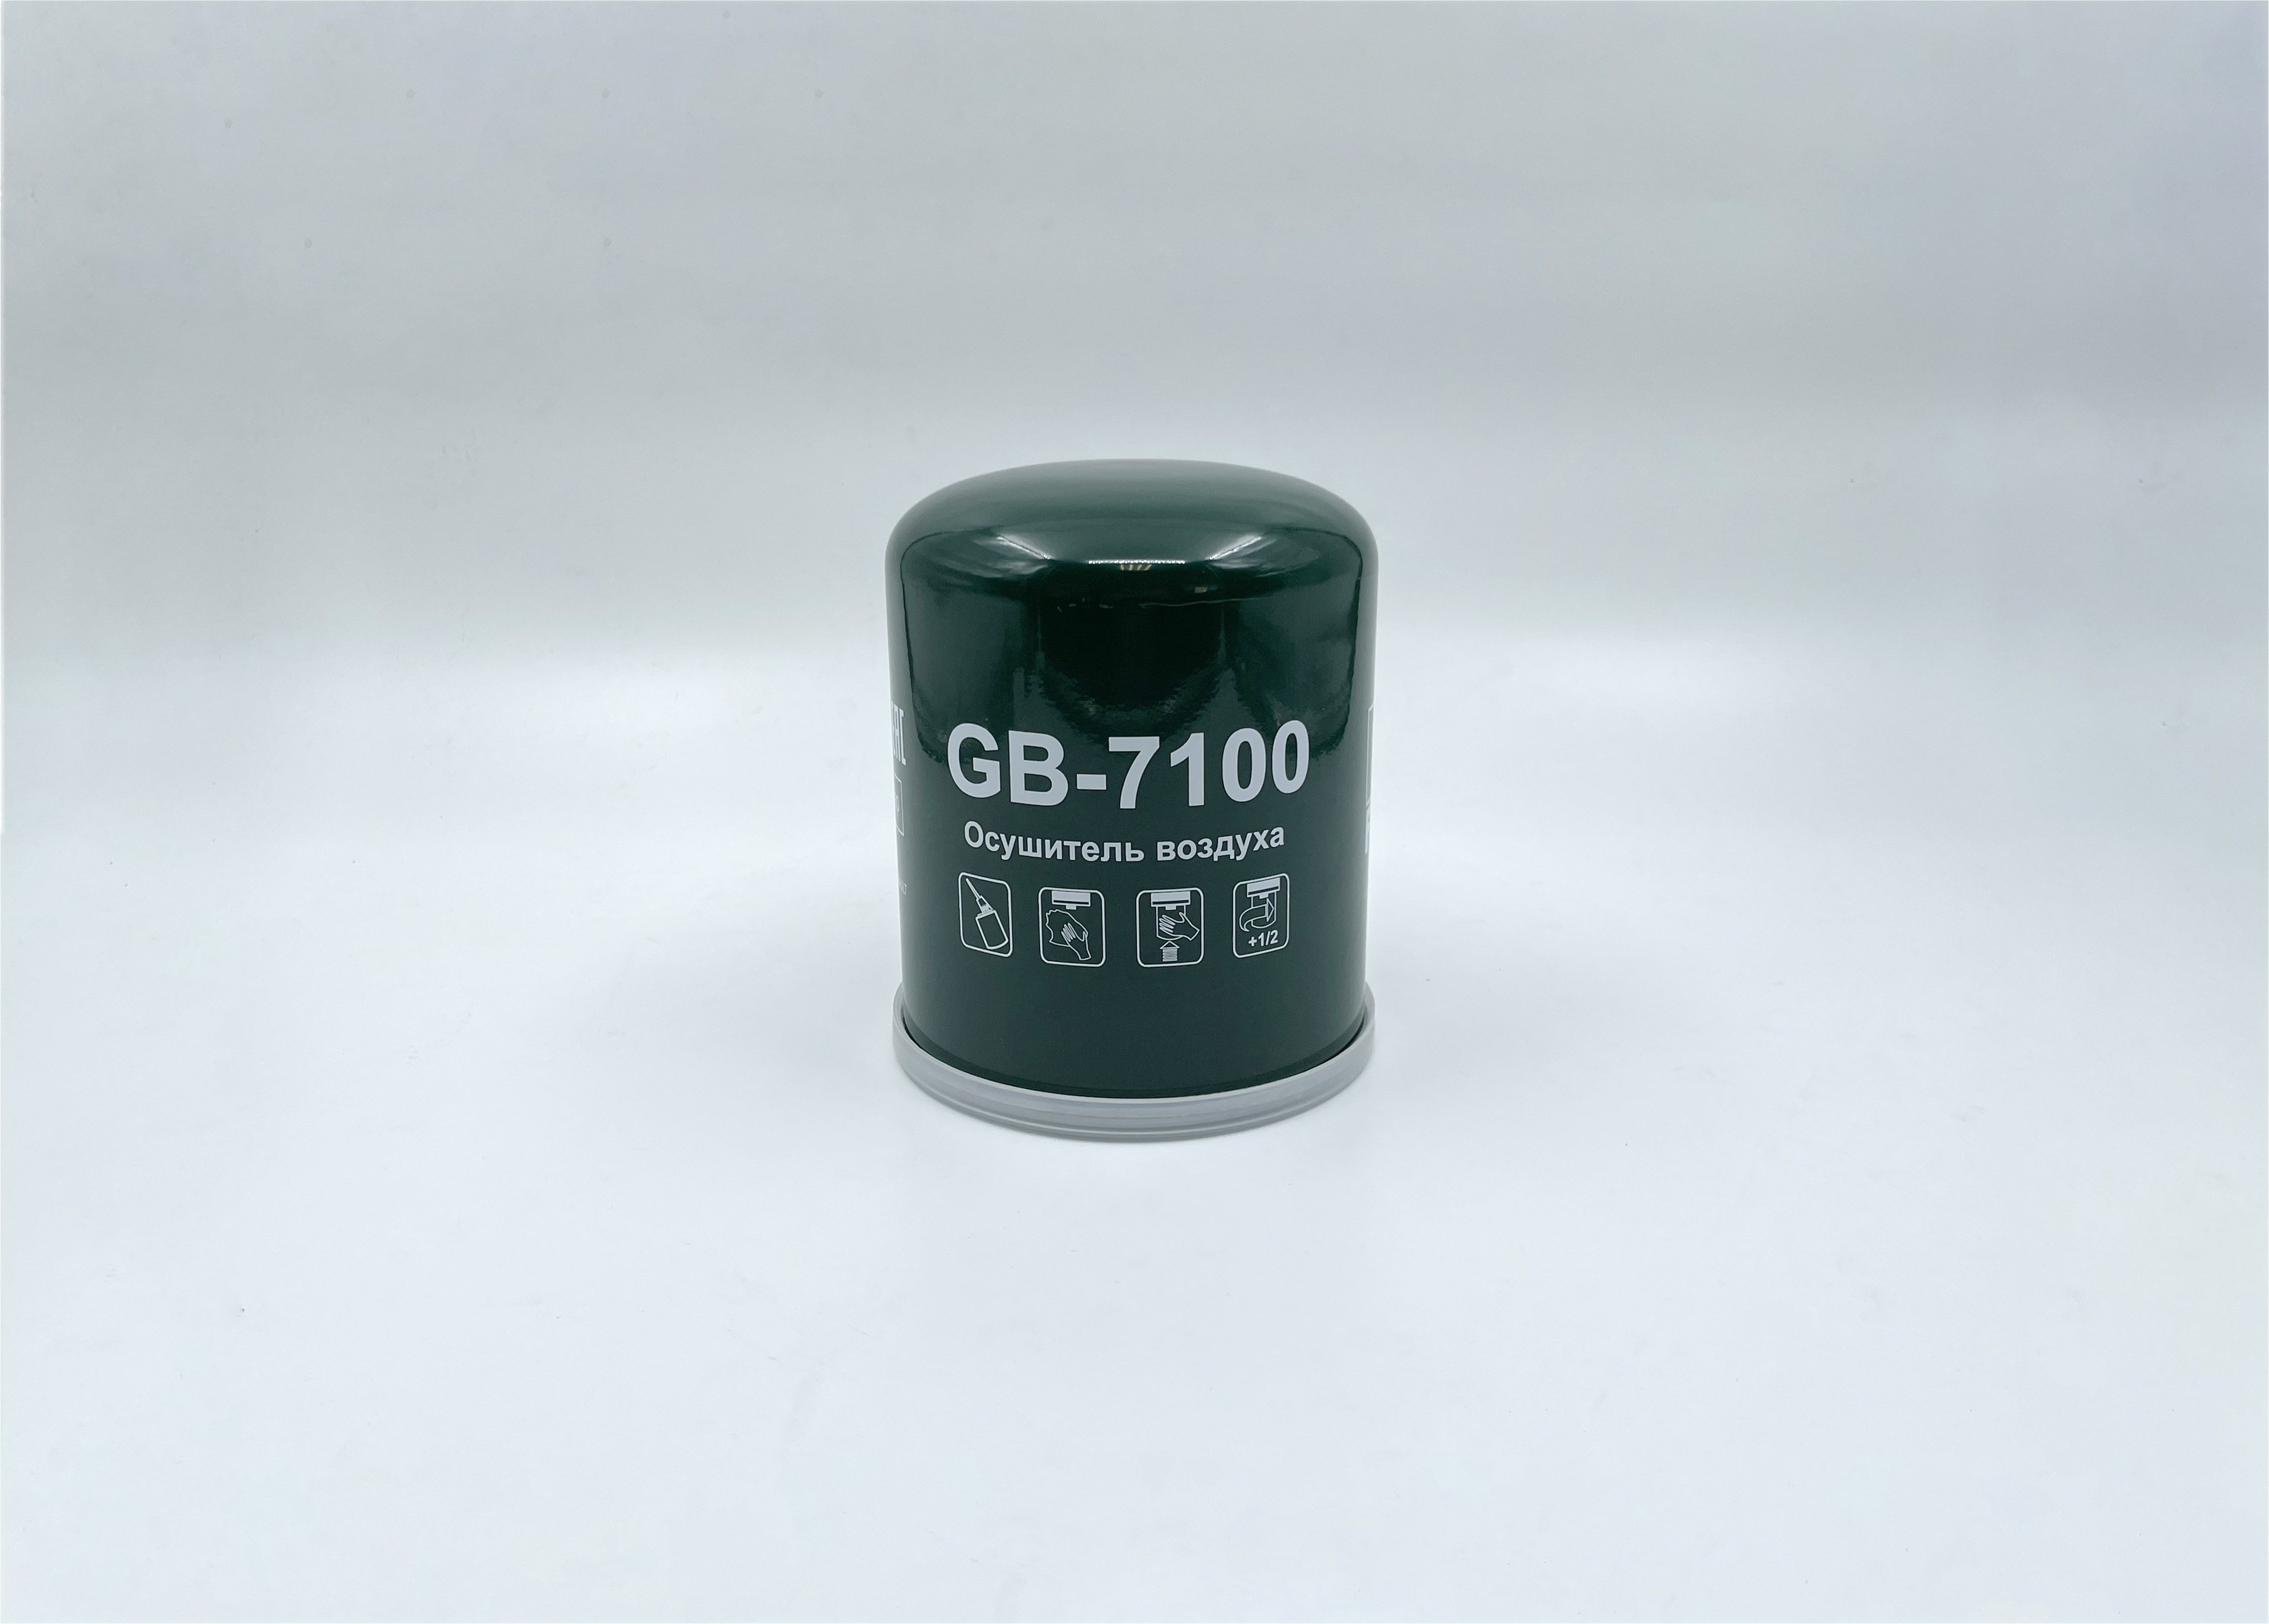 Фильтр влагоотделителя пневматической системы HCV - BIG Filter GB-7100